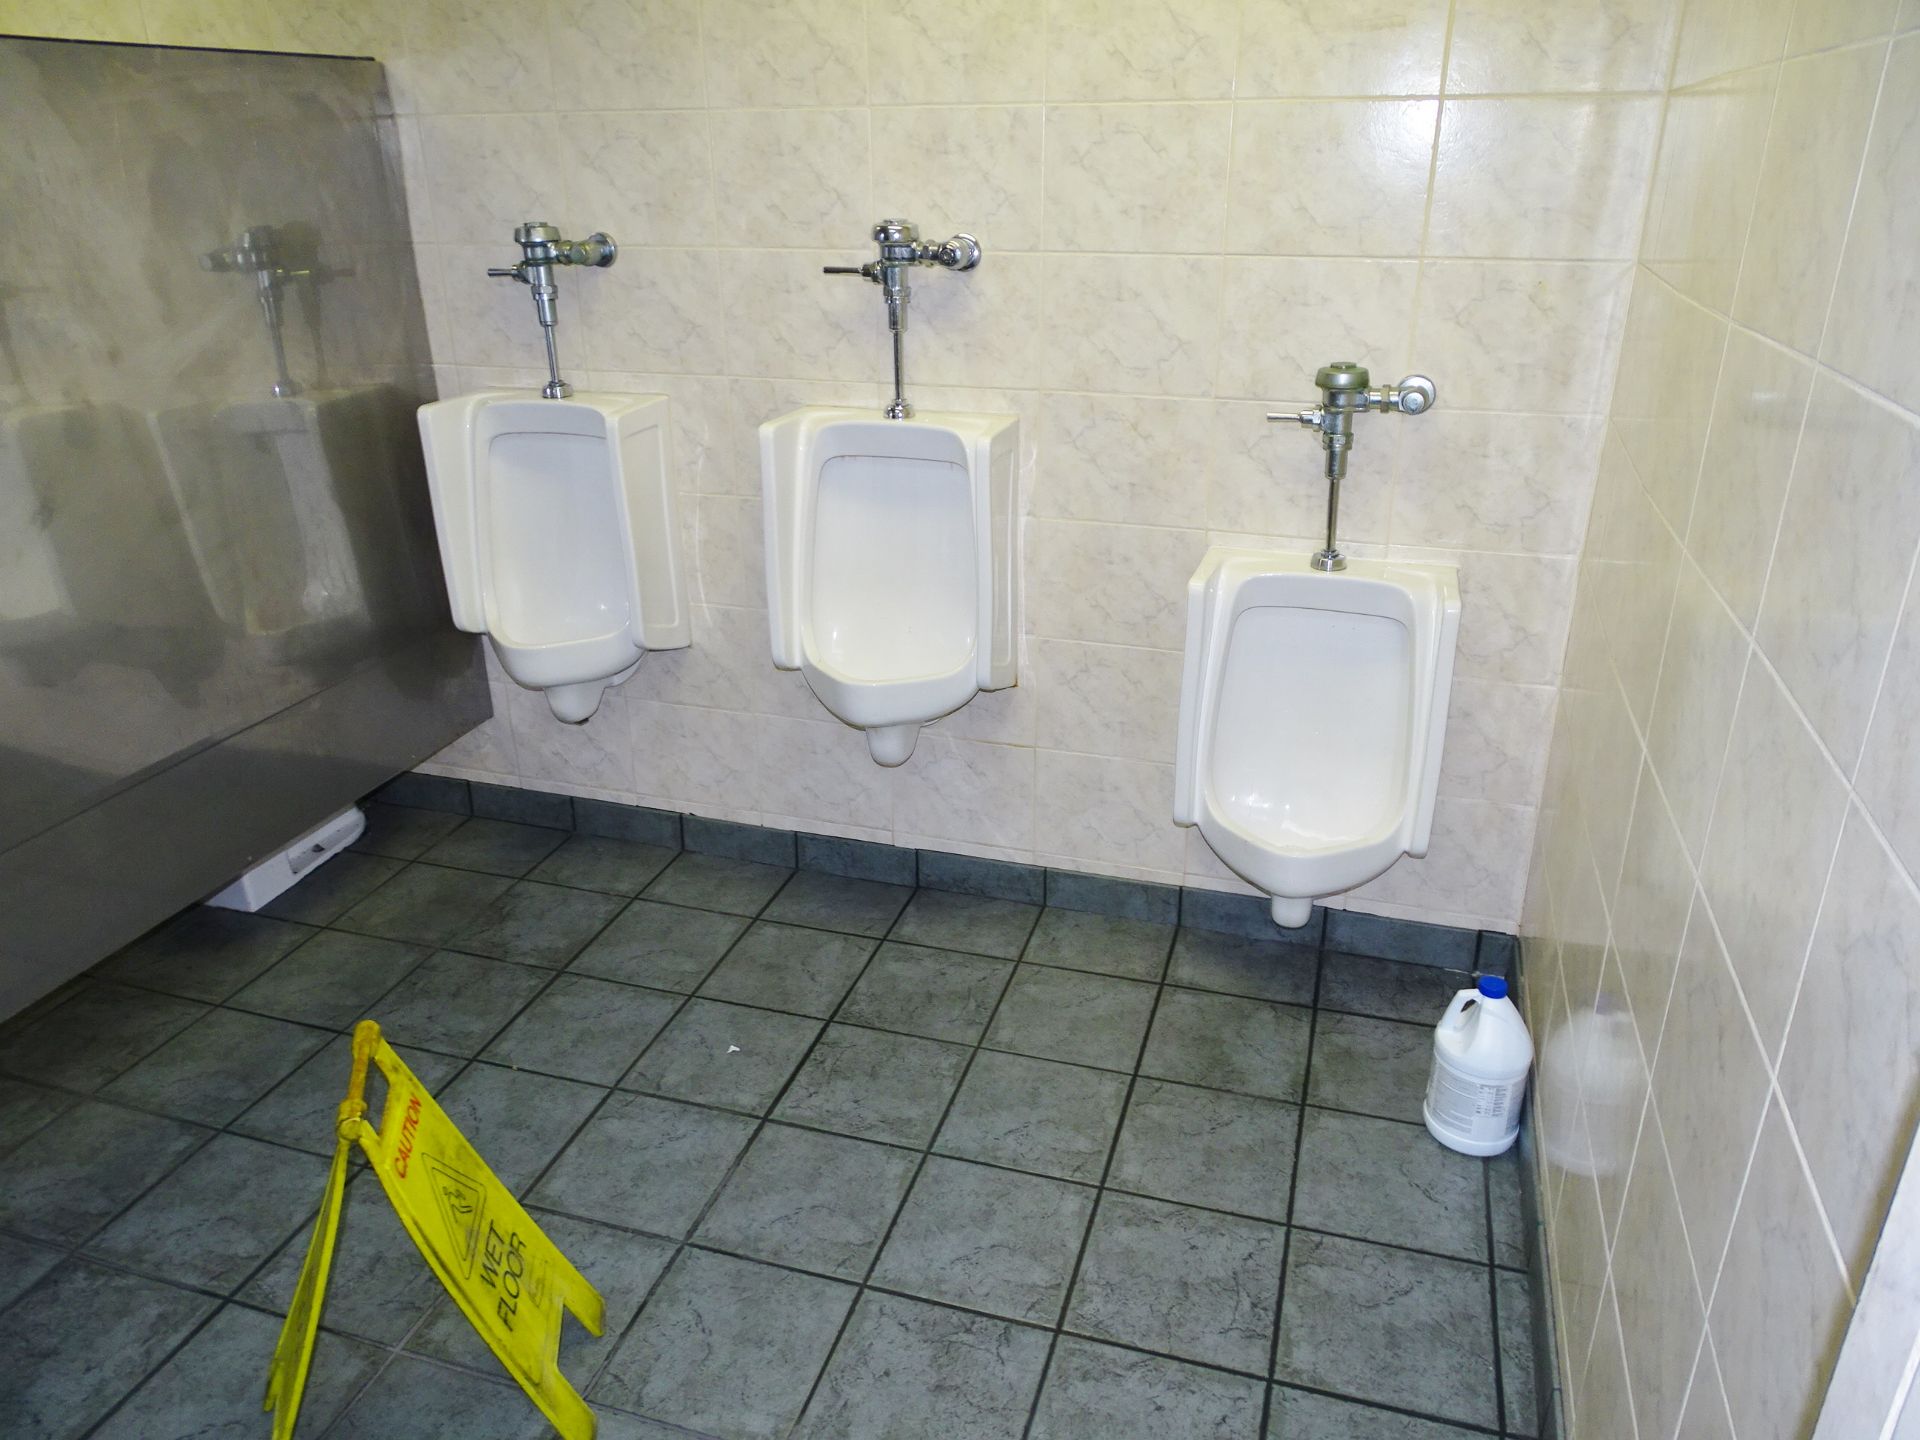 Restroom Fixtures (Men's Room) - Image 3 of 4